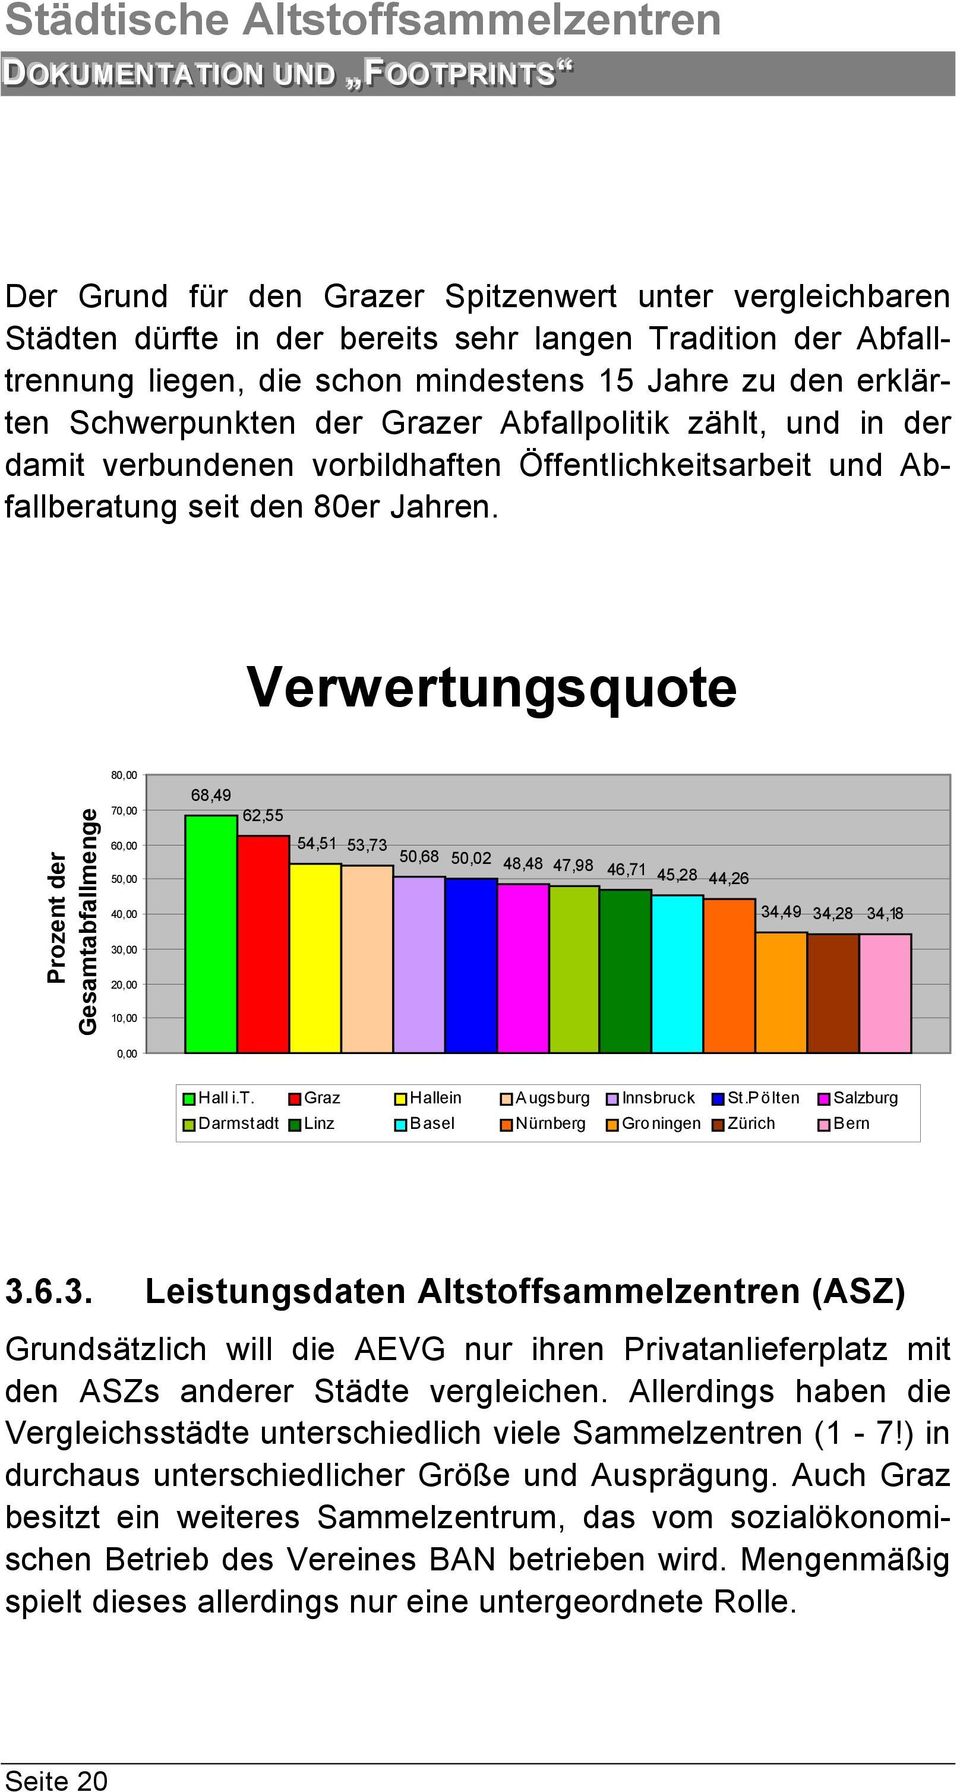 Verwertungsquote Prozent der Gesamtabfallmenge 80,00 70,00 60,00 50,00 40,00 30,00 20,00 10,00 68,49 62,55 54,51 53,73 50,68 50,02 48,48 47,98 46,71 45,28 44,26 34,49 34,28 34,18 0,00 Hall i.t. Graz Hallein Augsburg Innsbruck St.